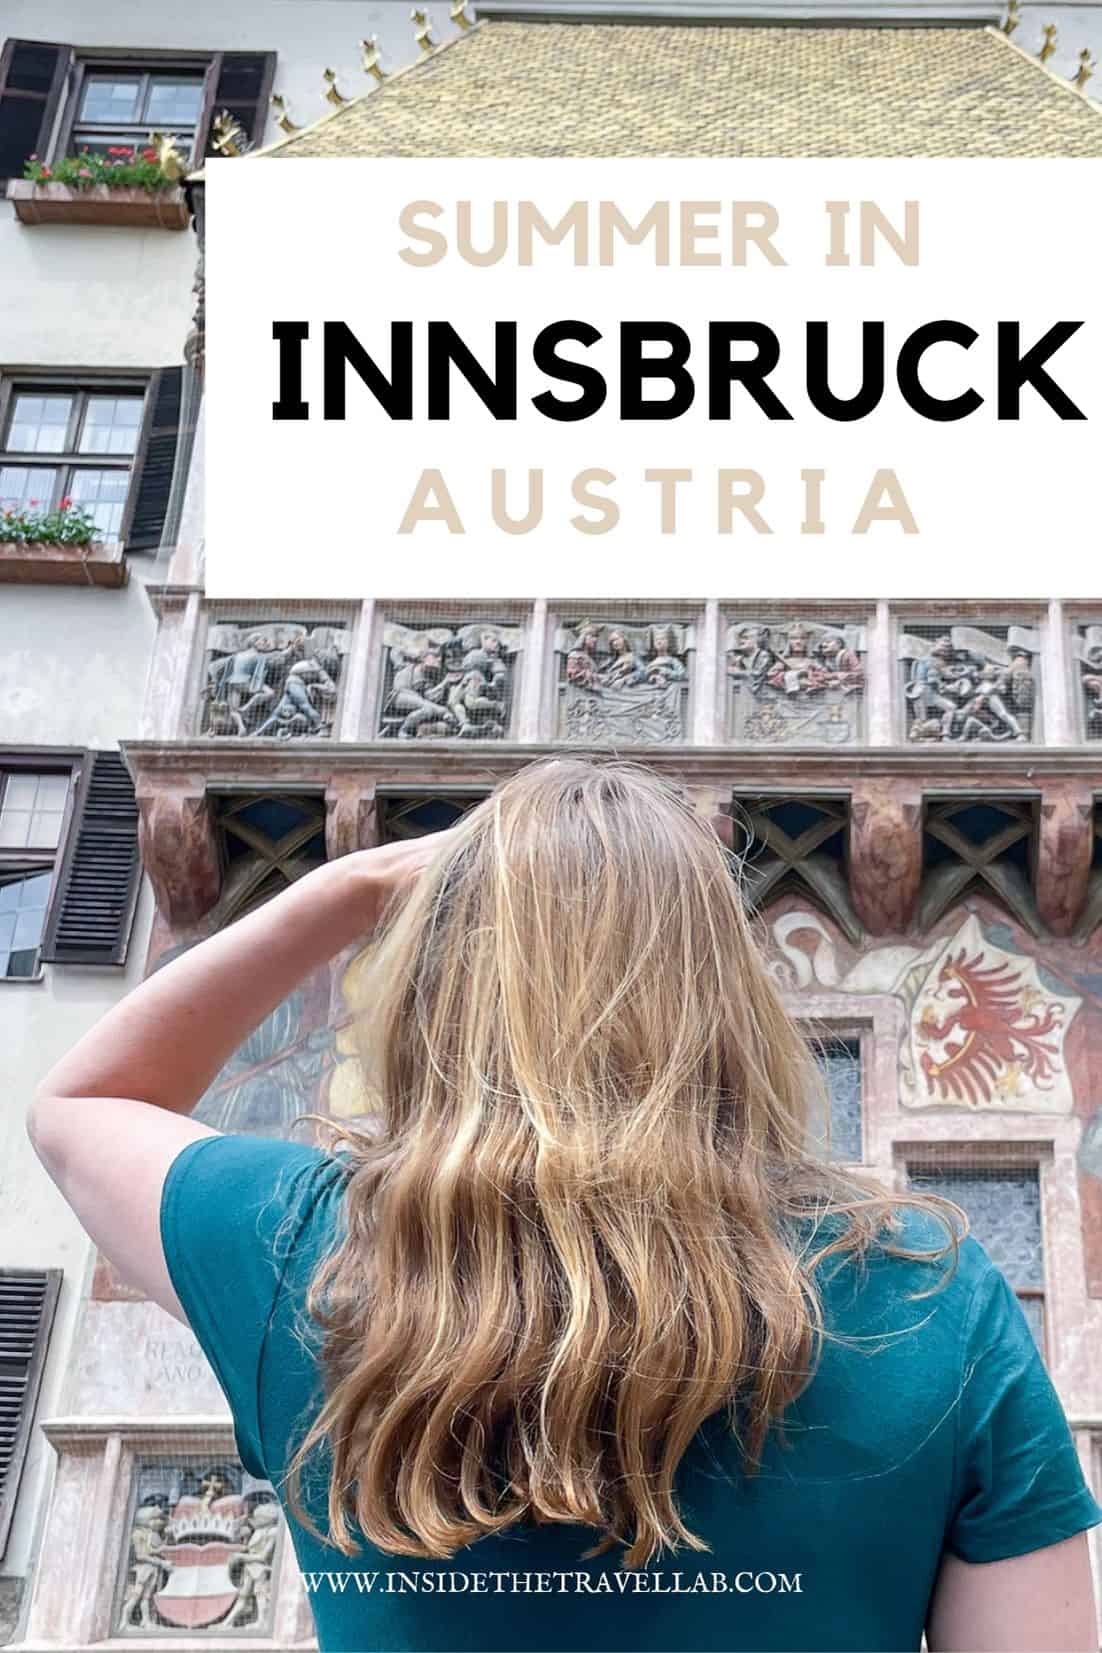 Summer in Innsbruck cover image